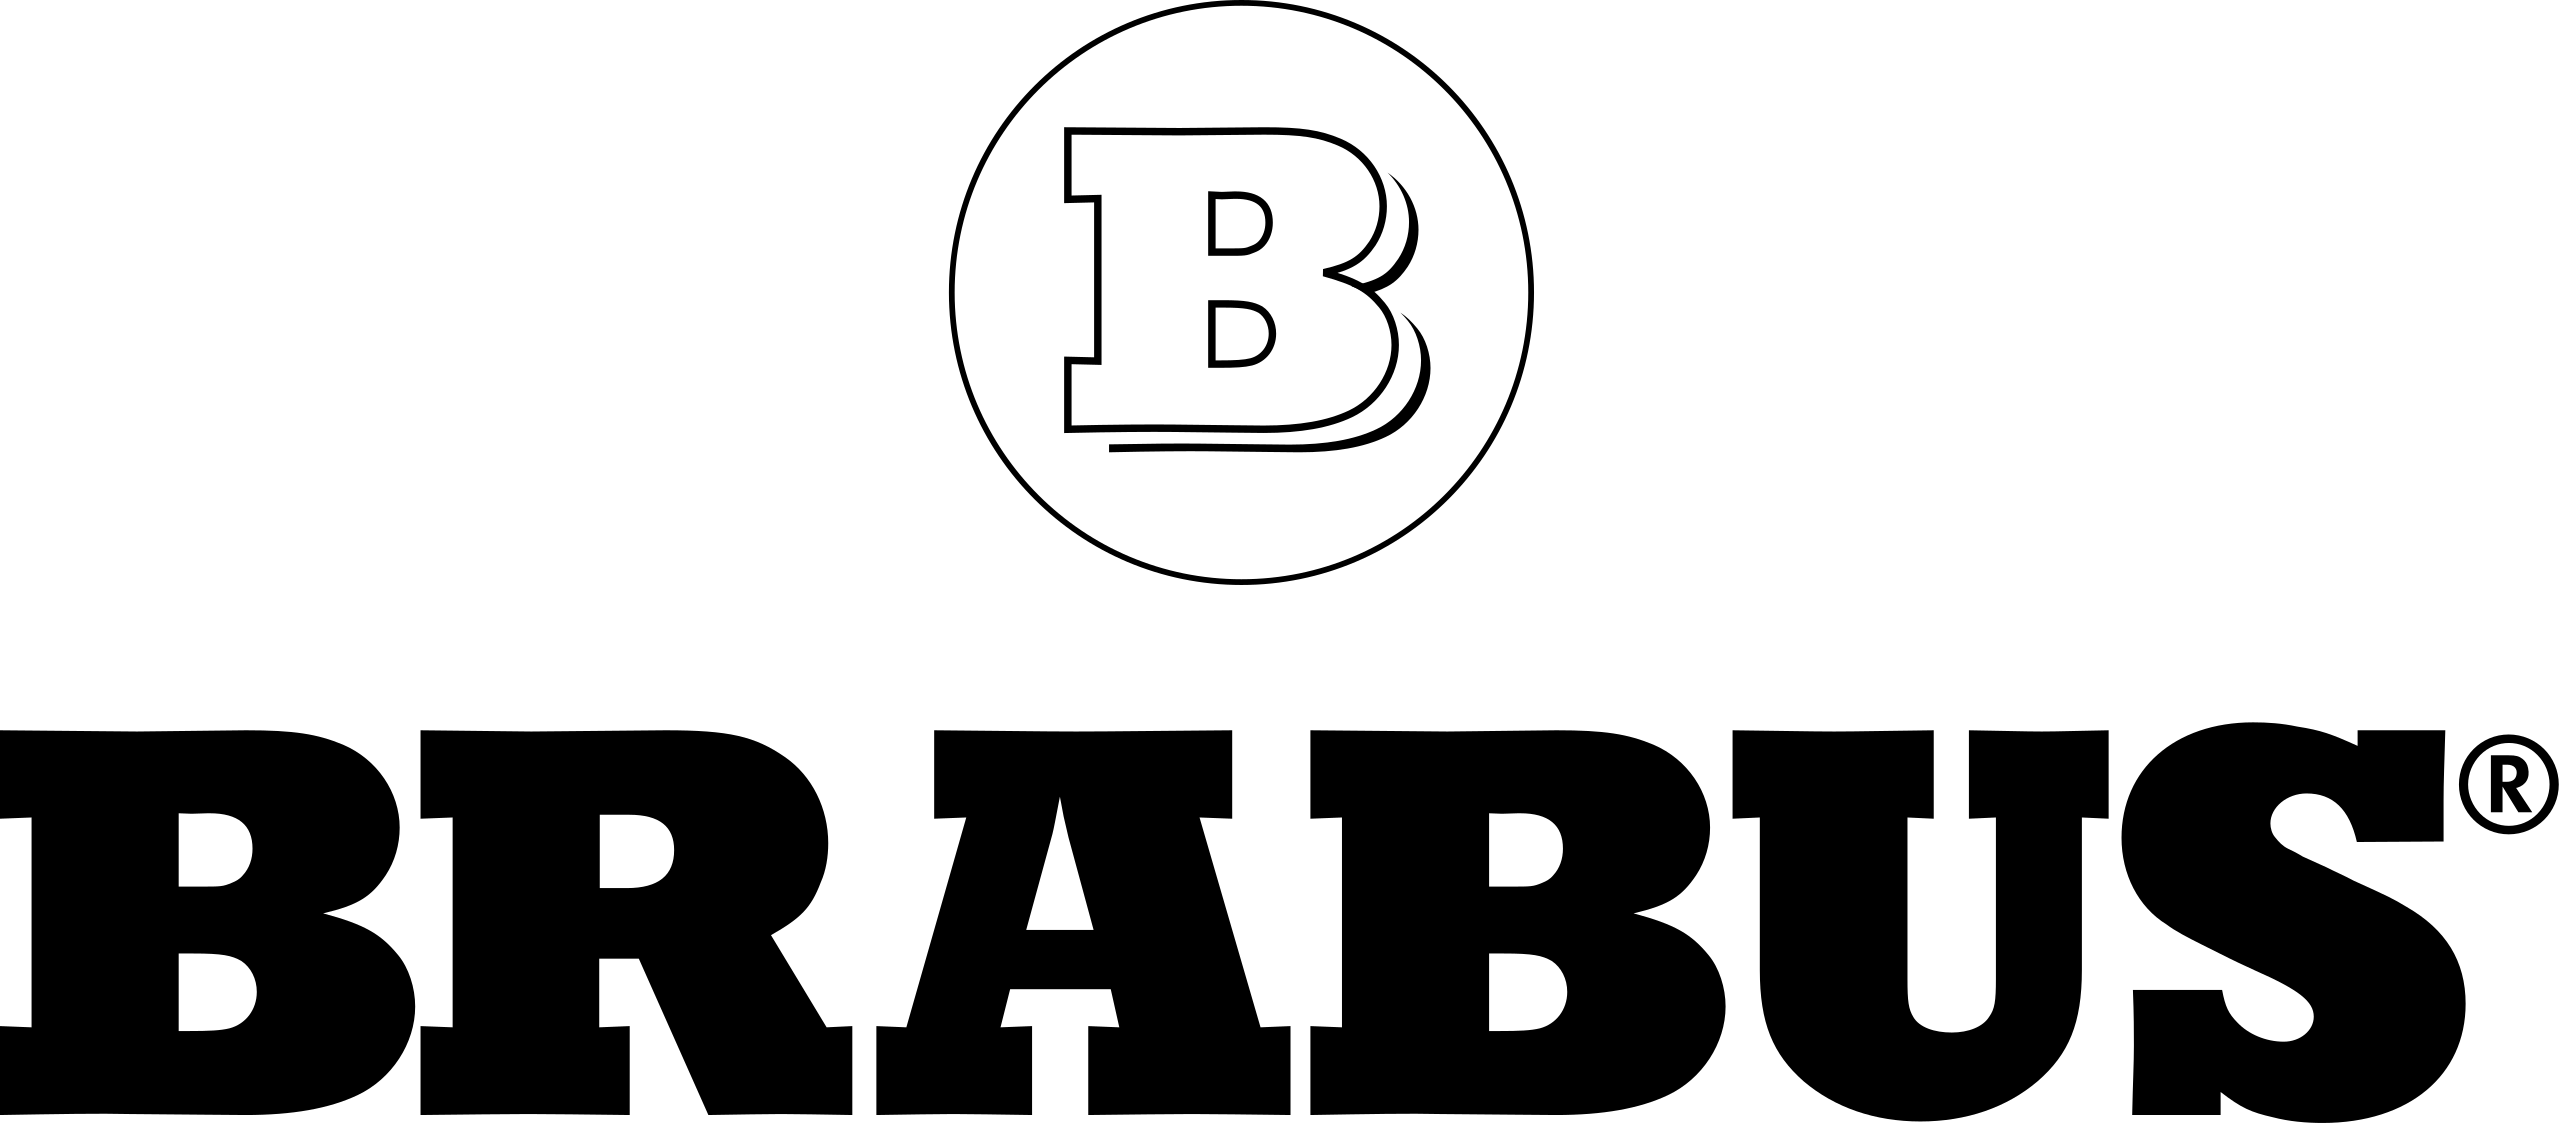 File:Brabus logo.svg - Wikimedia Commons